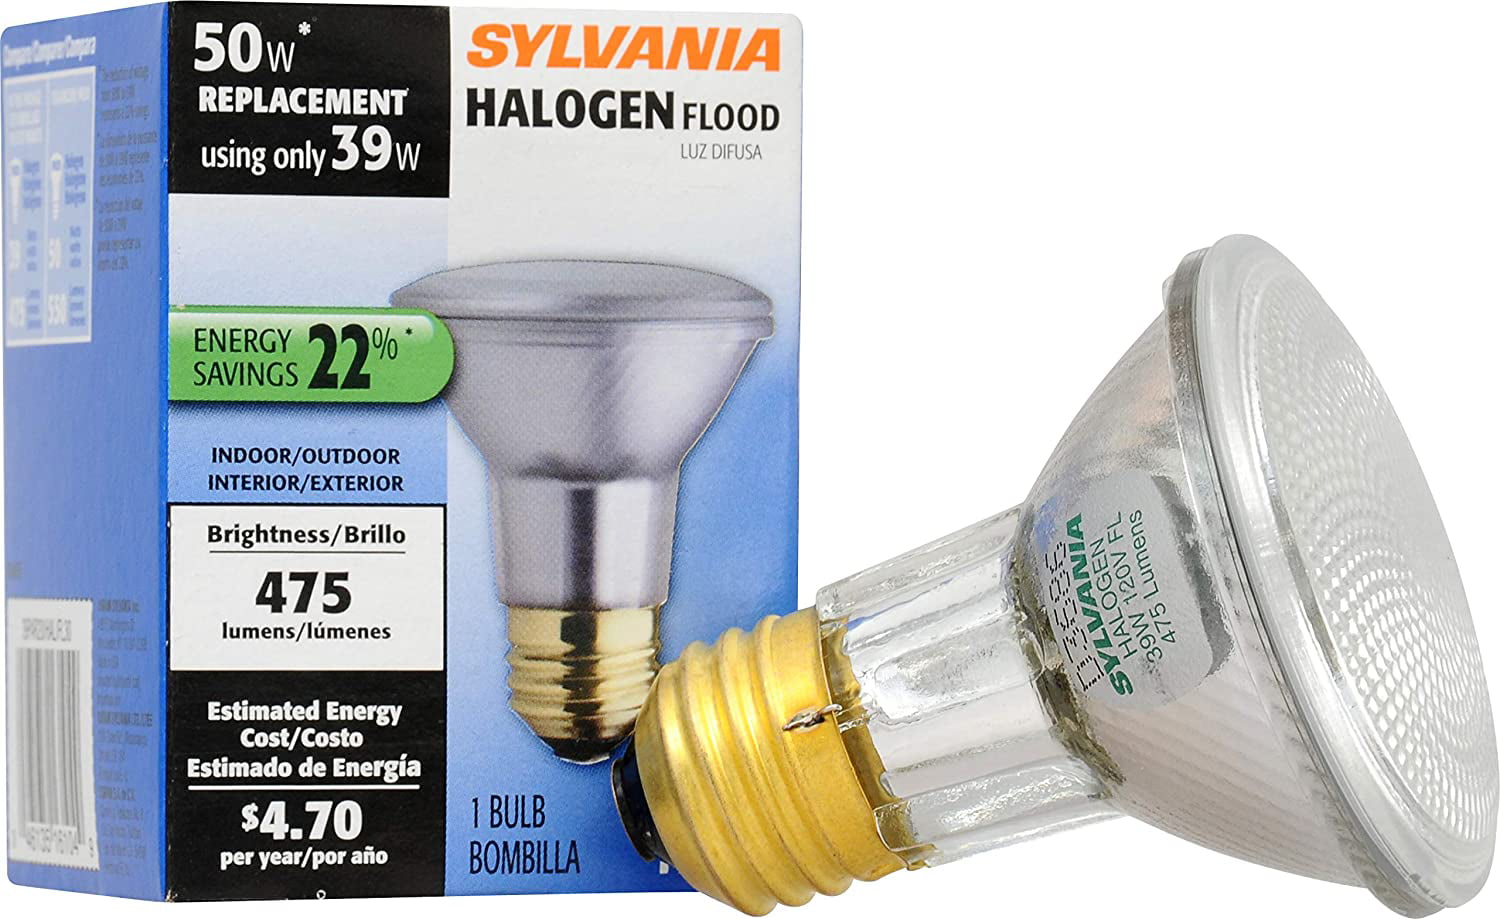 New SYLVANIA Halogen Flood Indoor/Outdoor 50w Replacement Using 39w 1 Bulb 